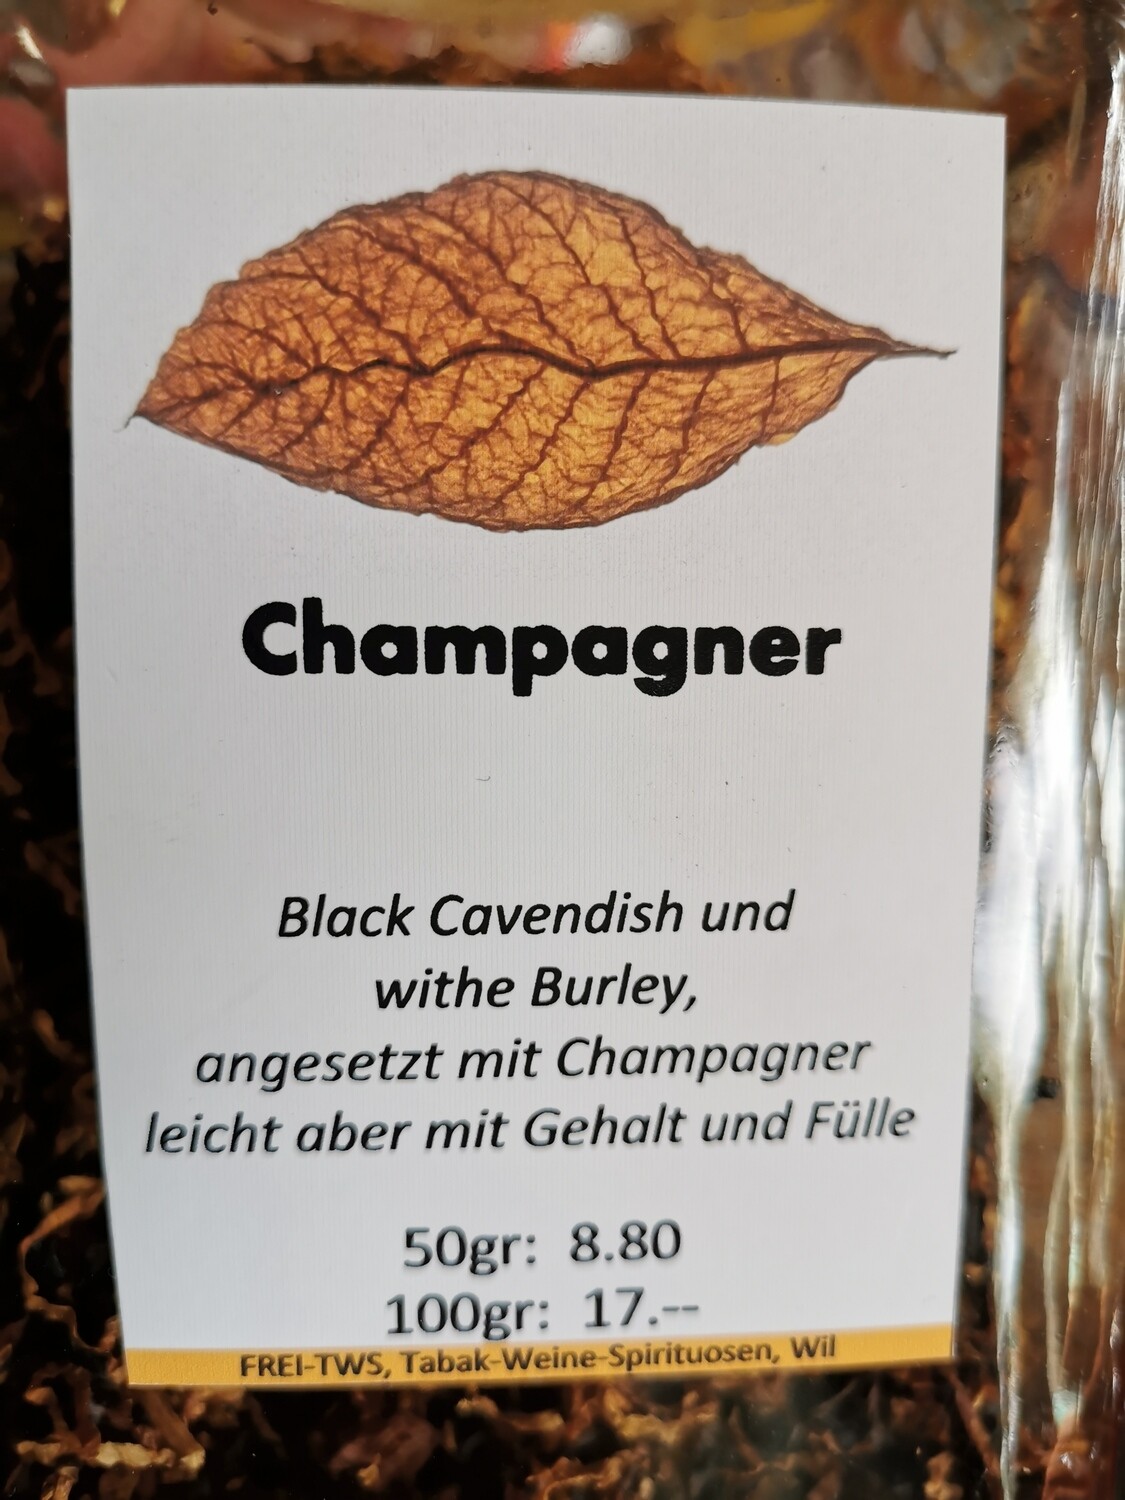 Pfeifentabak Champagner 50gr.